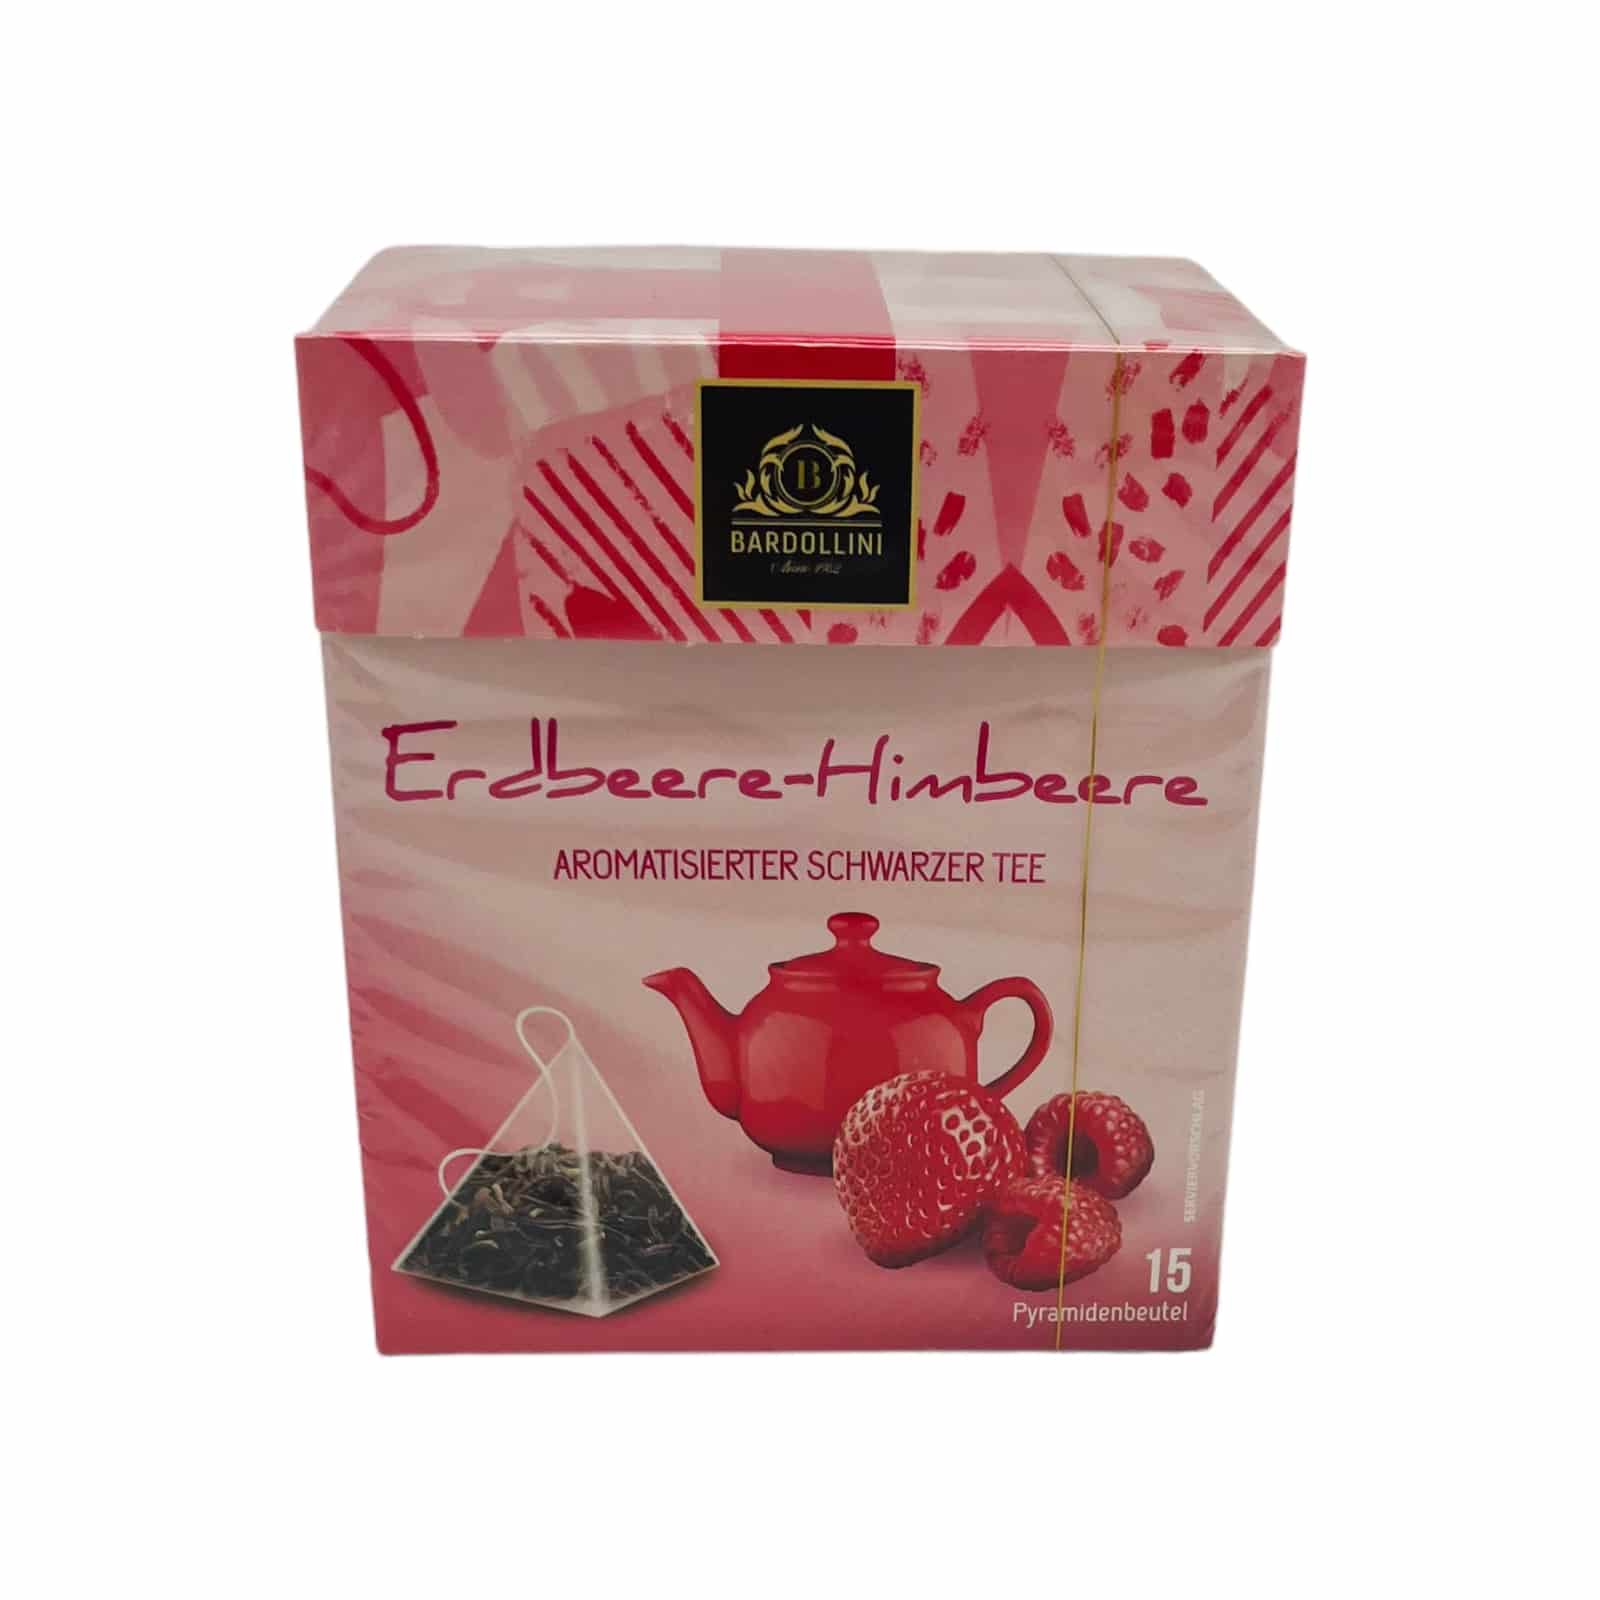 Bardollini Erdbeere-Himbeere Tea 22,5g